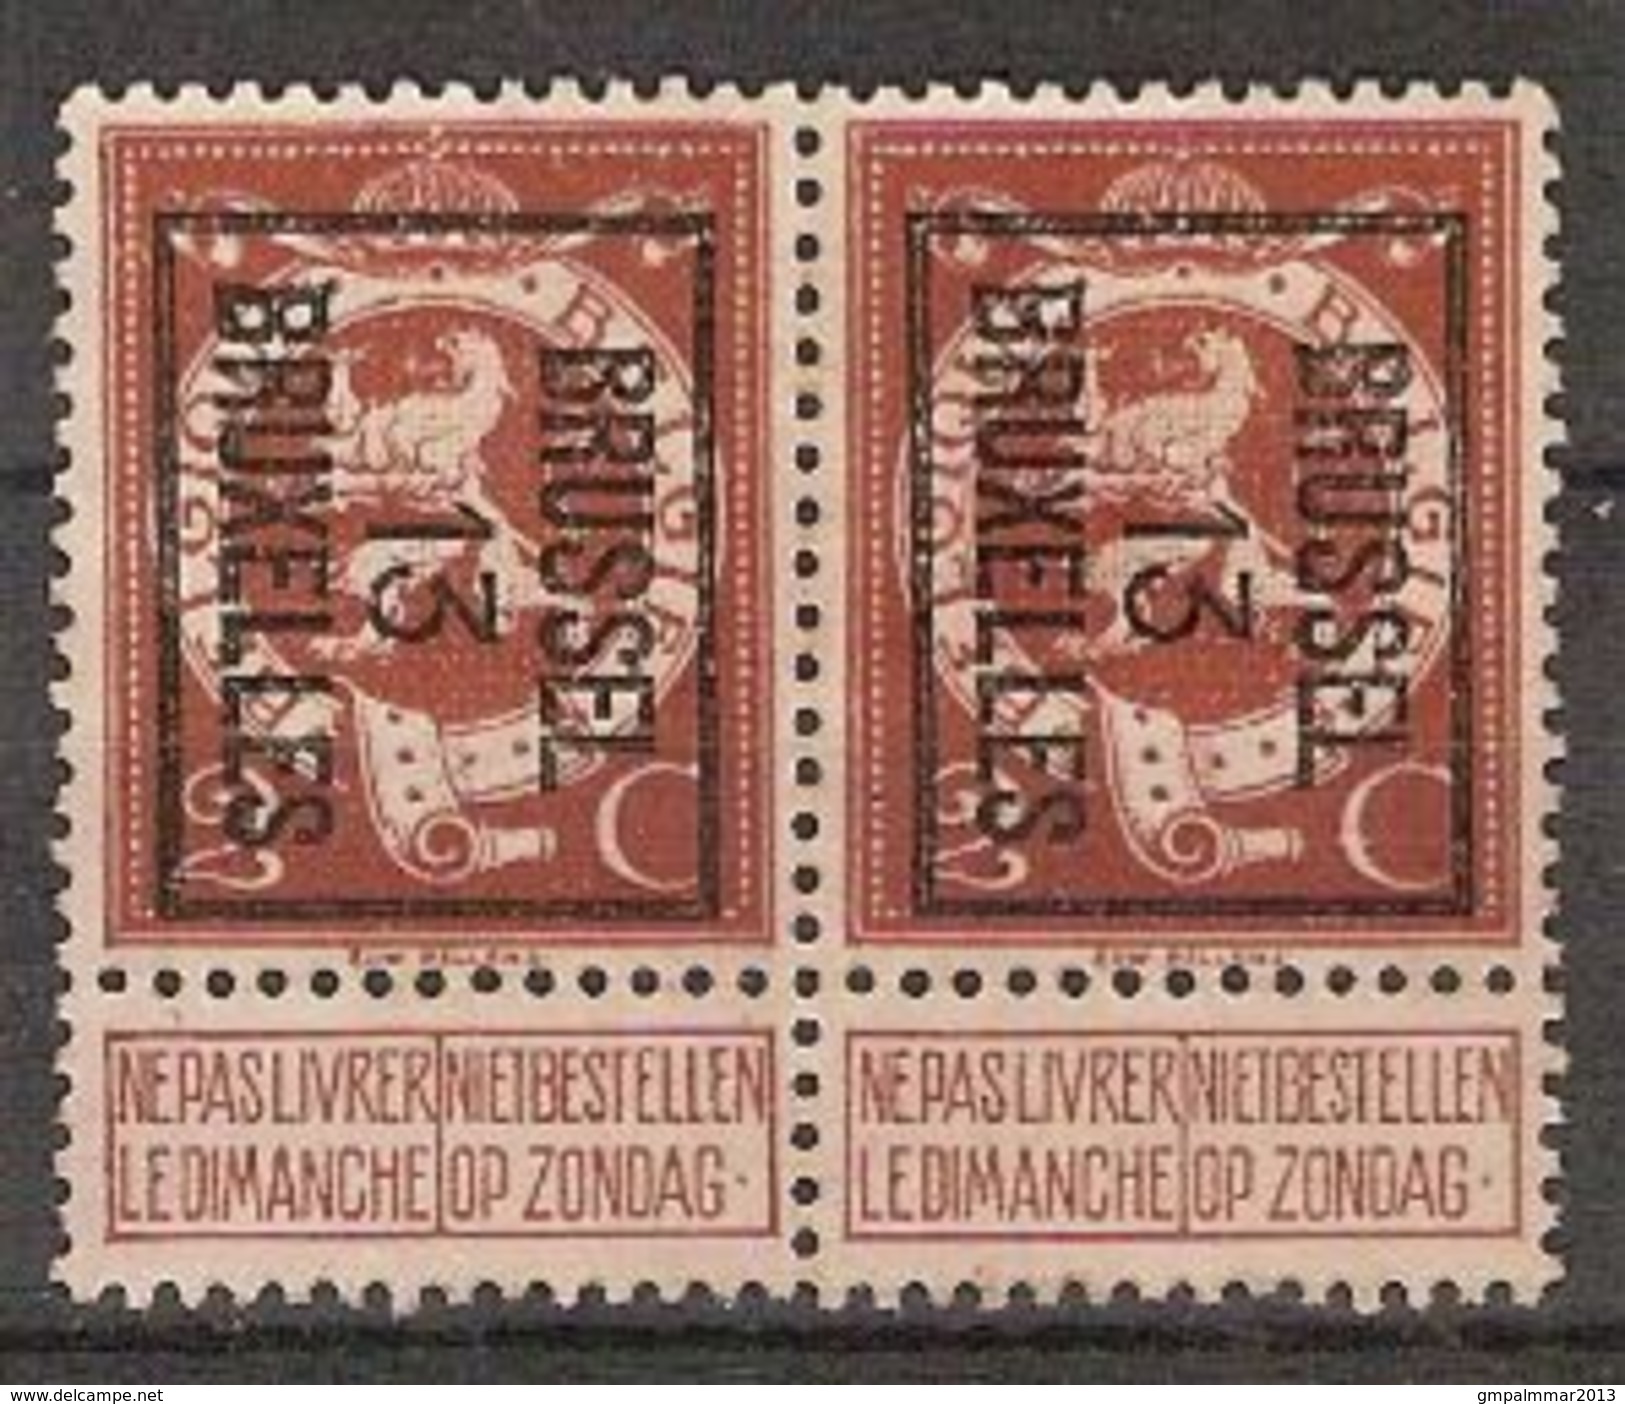 PELLENS Cijfer Nr. 109 Voorafgestempeld TYPO Nr. 41 Positie B BRUSSEL 13 BRUXELLES (2x) + Randinsc. ; Staat Zie Scan ! - Typografisch 1912-14 (Cijfer-leeuw)